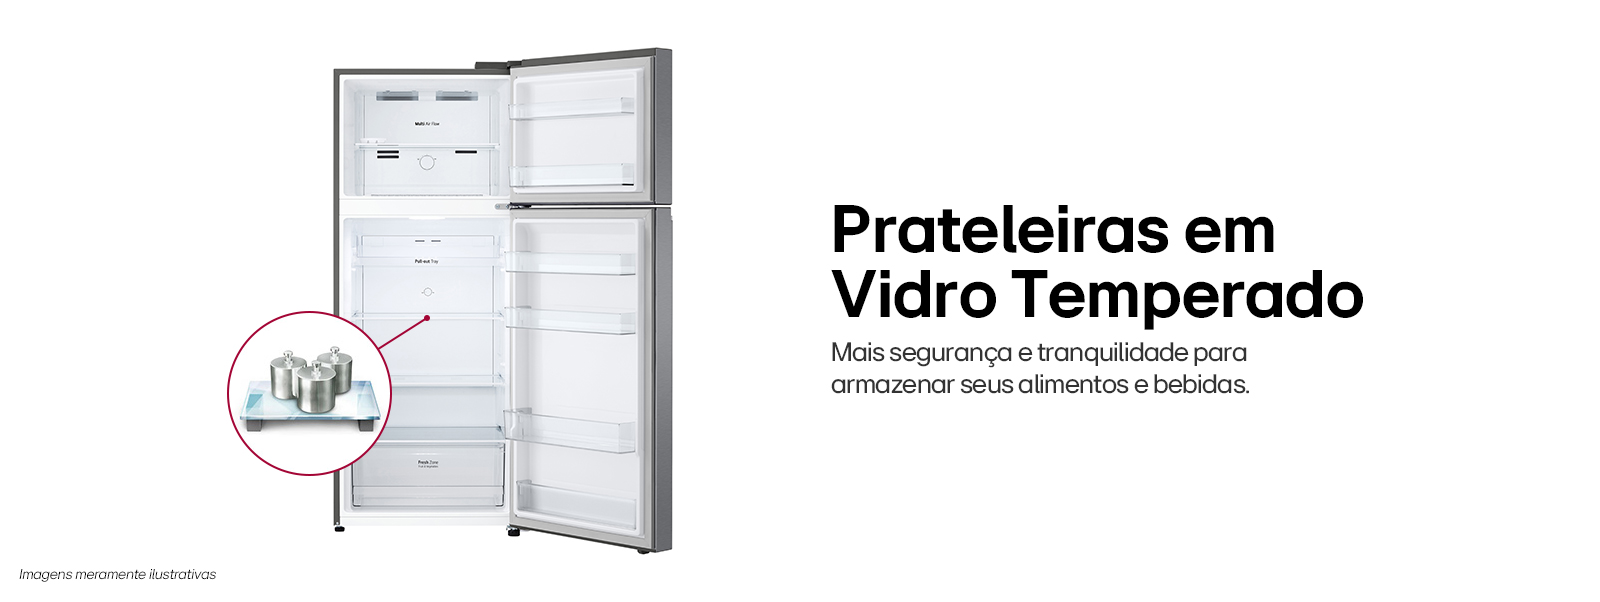 Imagem da geladeira com as portas abertas mostrando suas prateleiras de vidro temperado